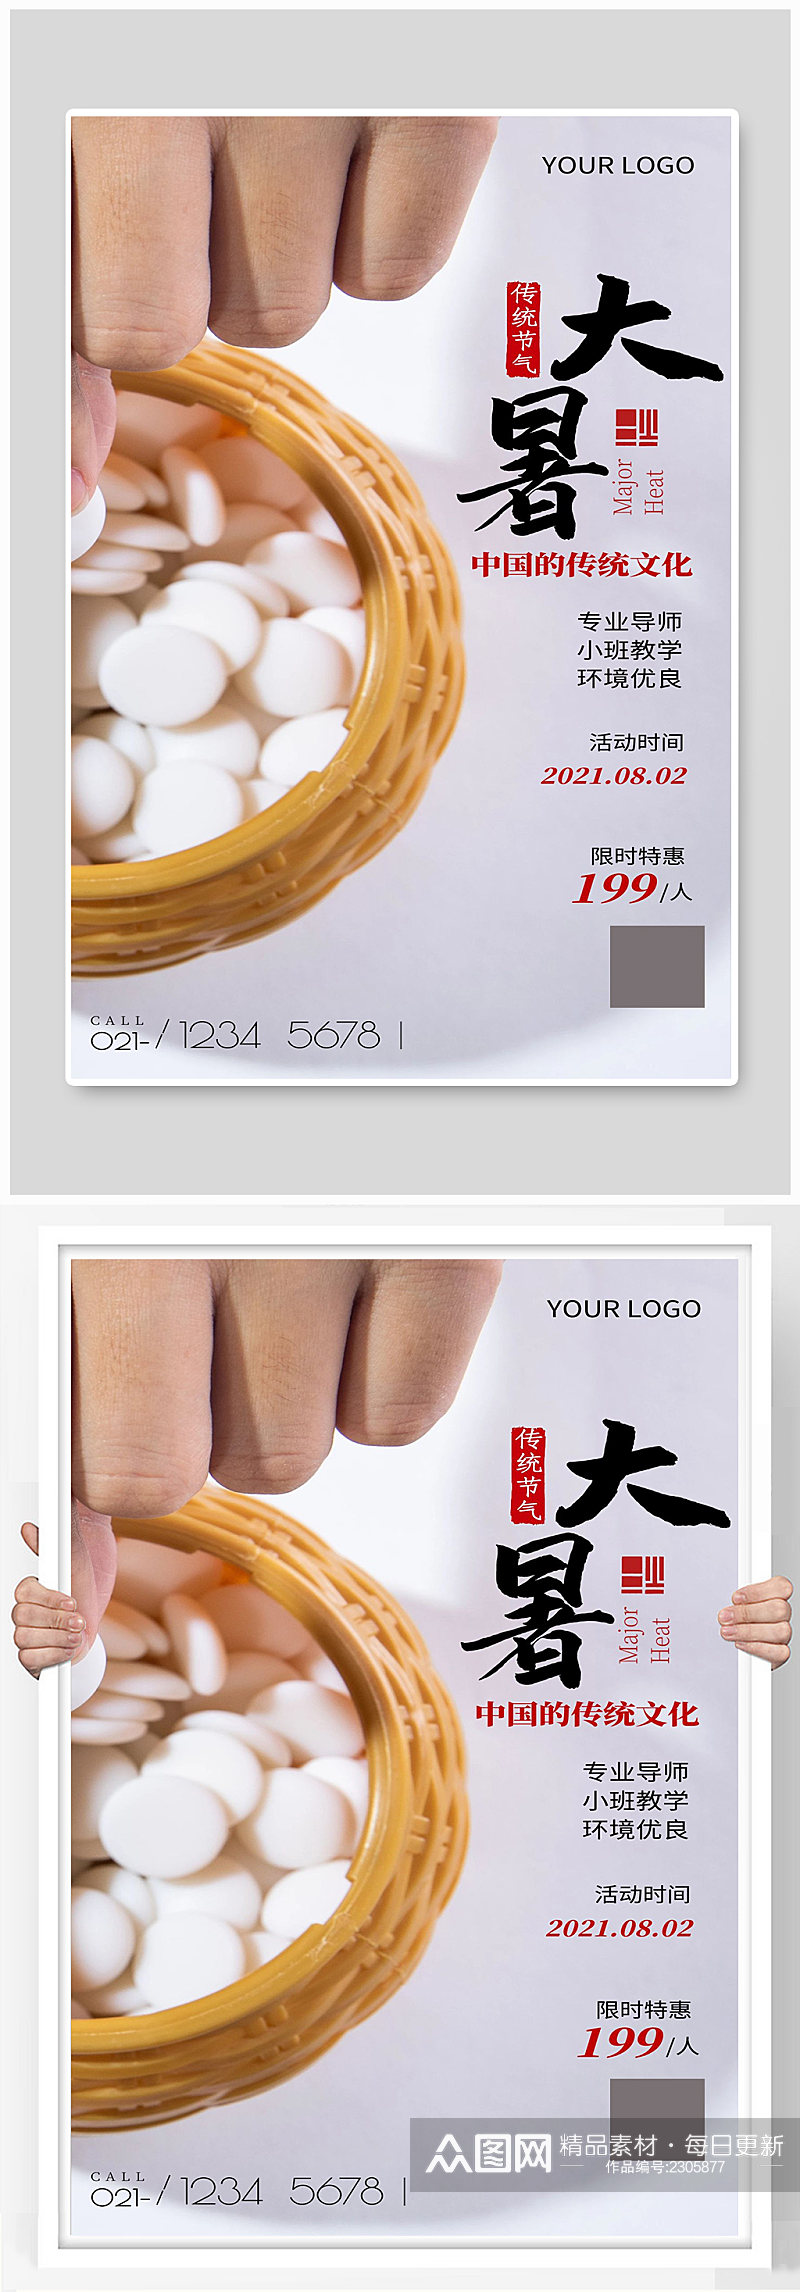 中国的传统文化宣传海报设计素材